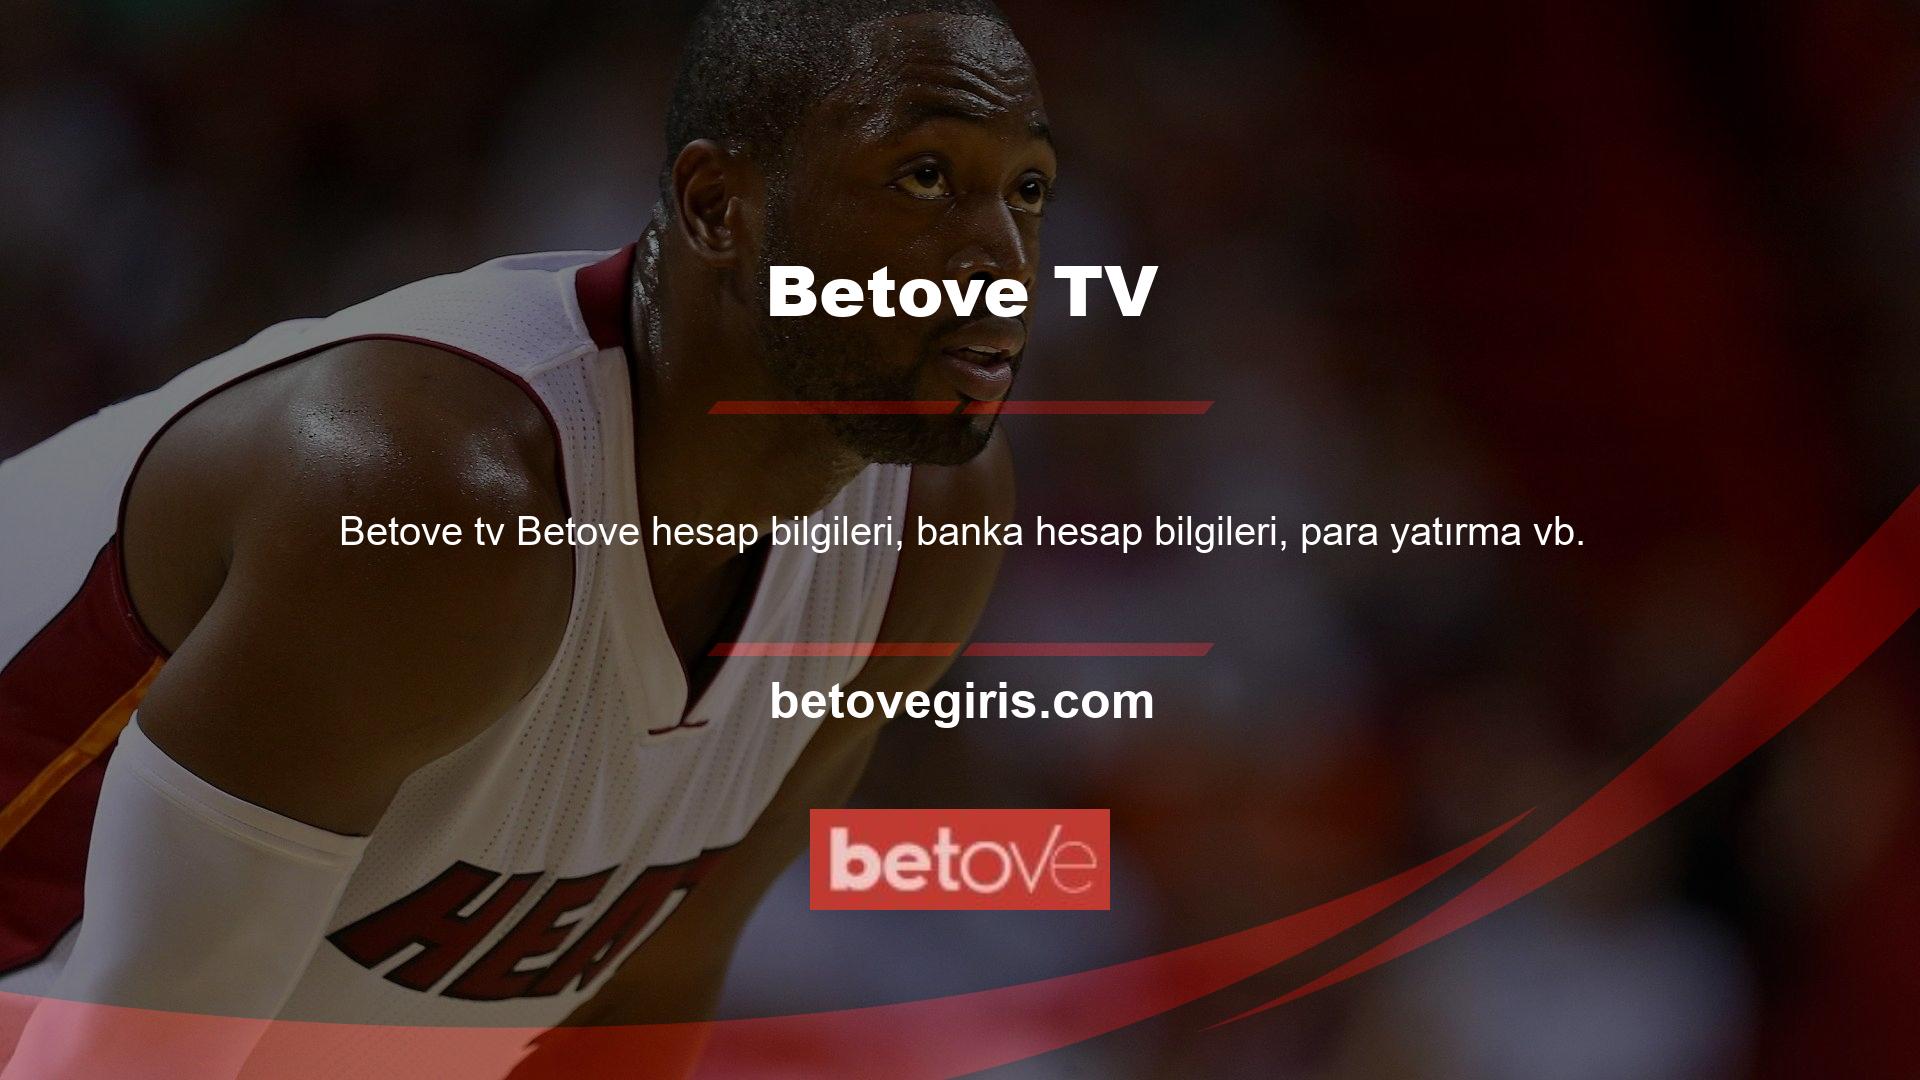 ile ilgili sorularınız için Betove TV canlı desteğine WhatsApp veya e-posta yoluyla ulaşabilirsiniz